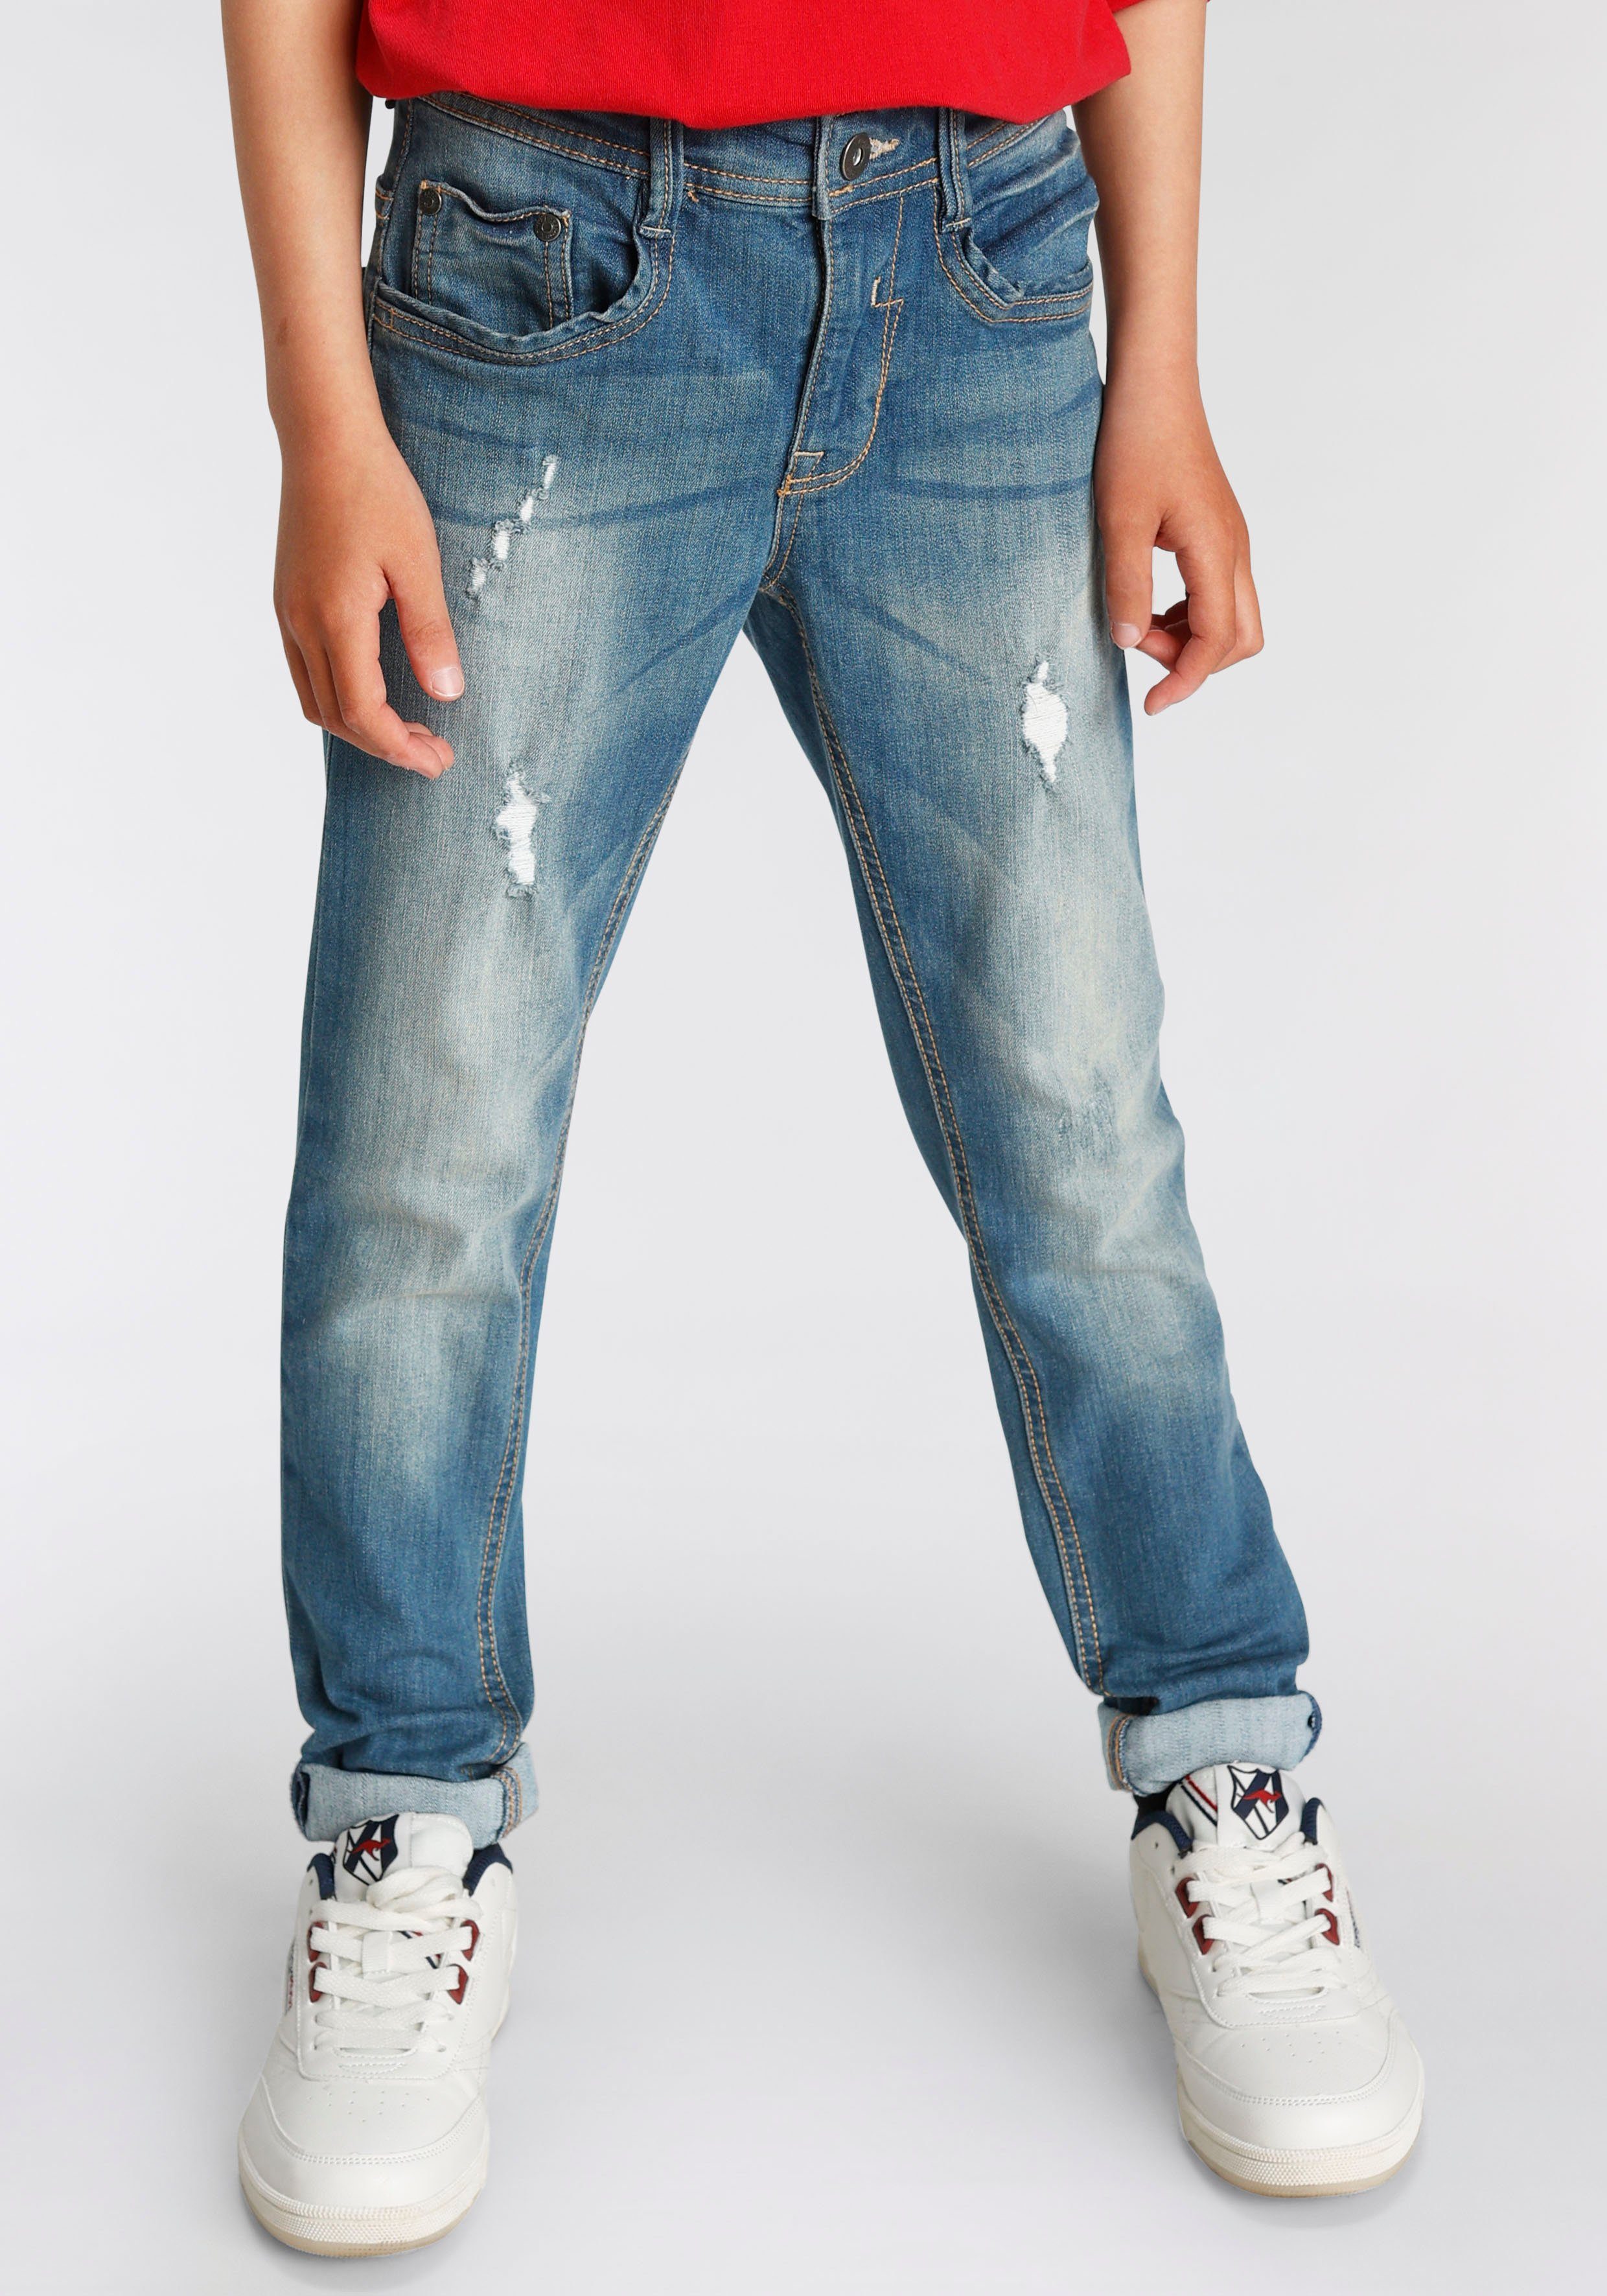 Lieferung zu einem supergünstigen Preis! Arizona Stretch-Jeans skinny fit